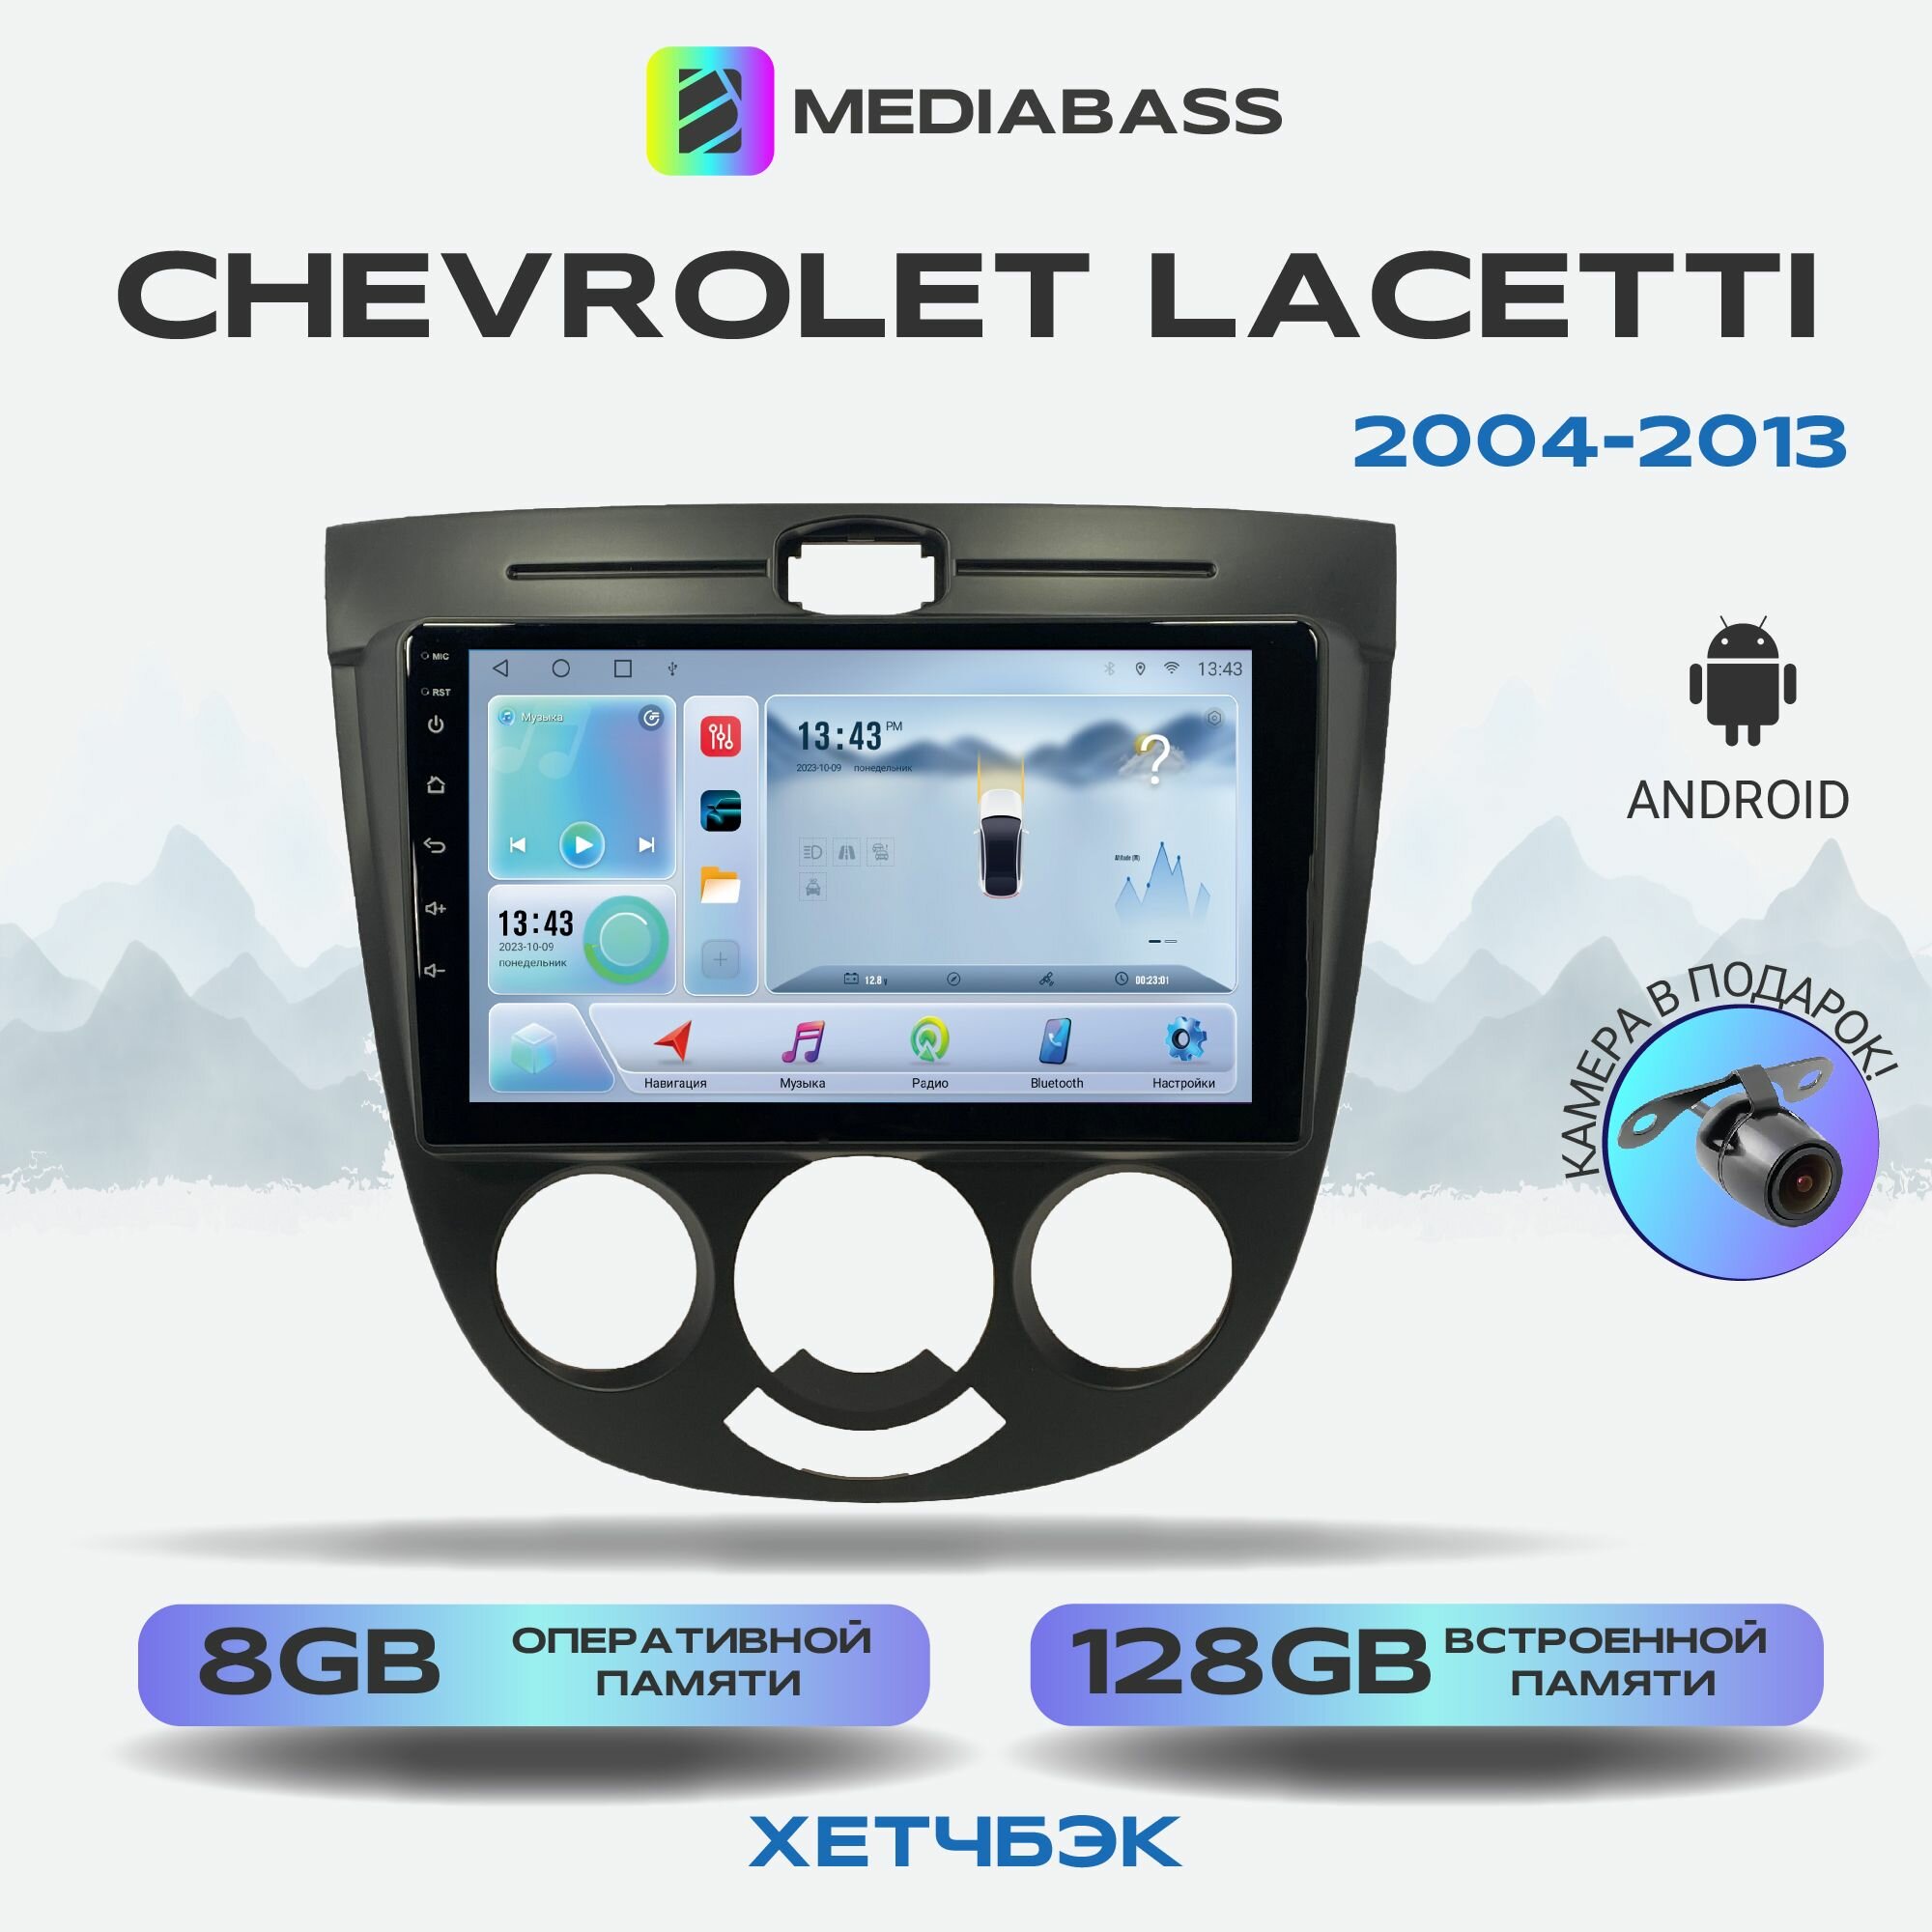 Магнитола Mediabass Chevrolet Lacetti хетчбэк, Android 12, 8/128ГБ, 8-ядерный процессор, DSP, 4G модем, голосовое управление, чип-усилитель TDA7851, 4G LTE / Шевроле Лачетти хетчбэк